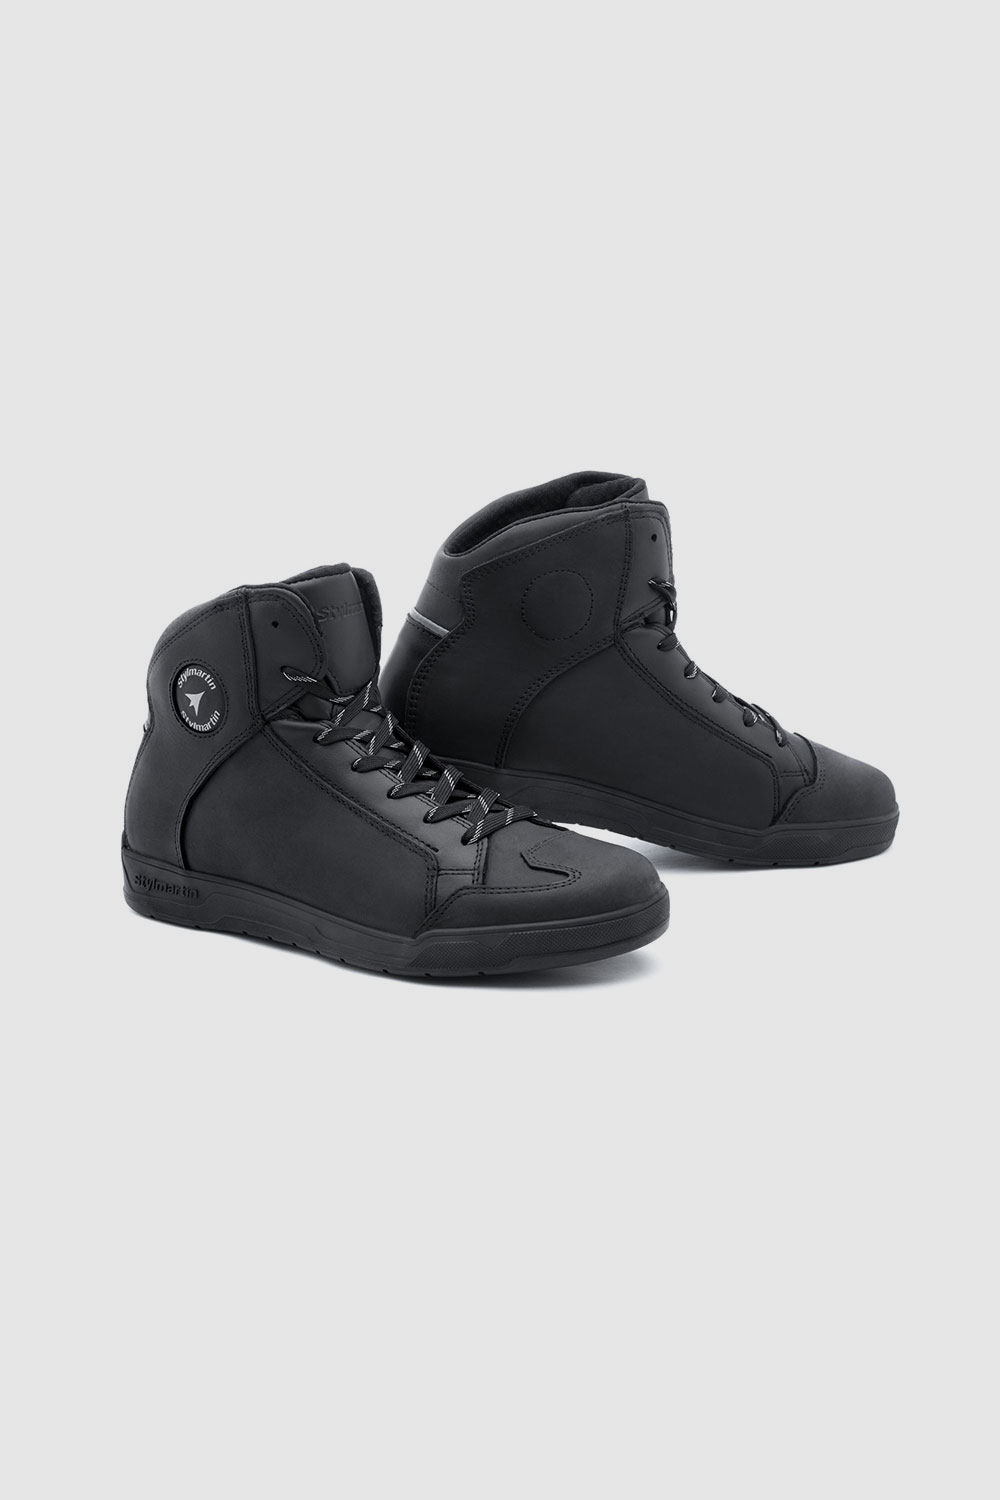 STYLMARTIN MATT WP BLACK - Waterproof Motorcycle Sneakers 1